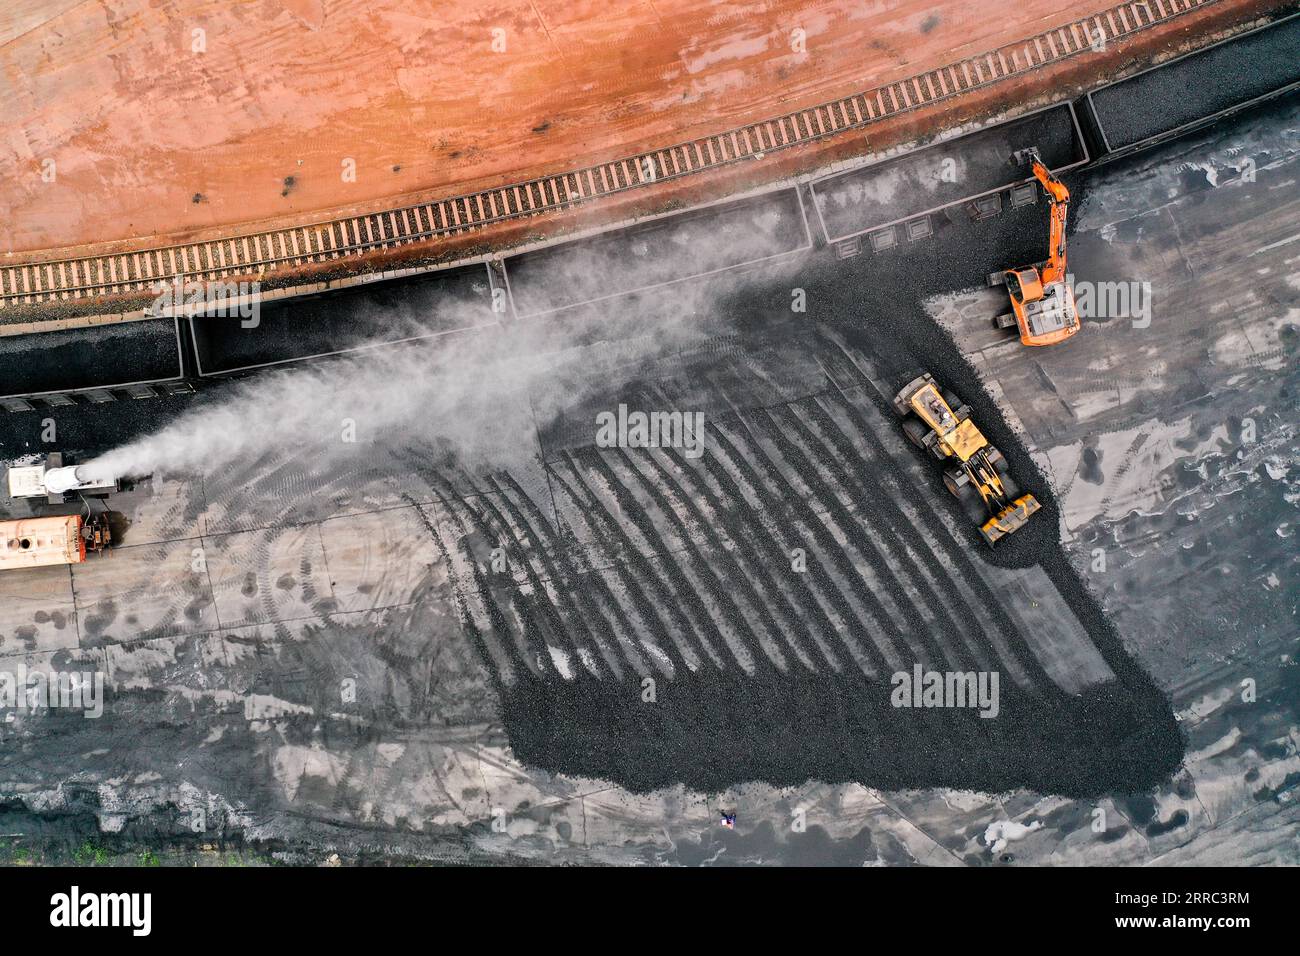 211016 -- QIAN AN, 16. Oktober 2021 -- Luftaufnahme aufgenommen am 16. September 2021 zeigt Transportfahrzeuge, die Koks aus einem Zug unter Staubkontrolle auf einem Logistikhof in Qian an Ctiy, Provinz Hebei, entladen. Qian an in der Provinz Hebei ist ein wichtiger Bezirk in der Stahlindustrie in Nordchina, mit einer großen Nachfrage nach Rohstoffen wie Eisenerz, Kohle und Koks. Um die Umweltverschmutzung und die Verkehrsüberlastung durch den Straßentransport von Massengütern zu verringern, wurden spezielle Eisenbahnlinien für wichtige Eisen- und Stahlunternehmen im Rahmen eines Road-to-Rail-Systems gebaut, das die Straßenverkehrsinfrastruktur erleichtert Stockfoto